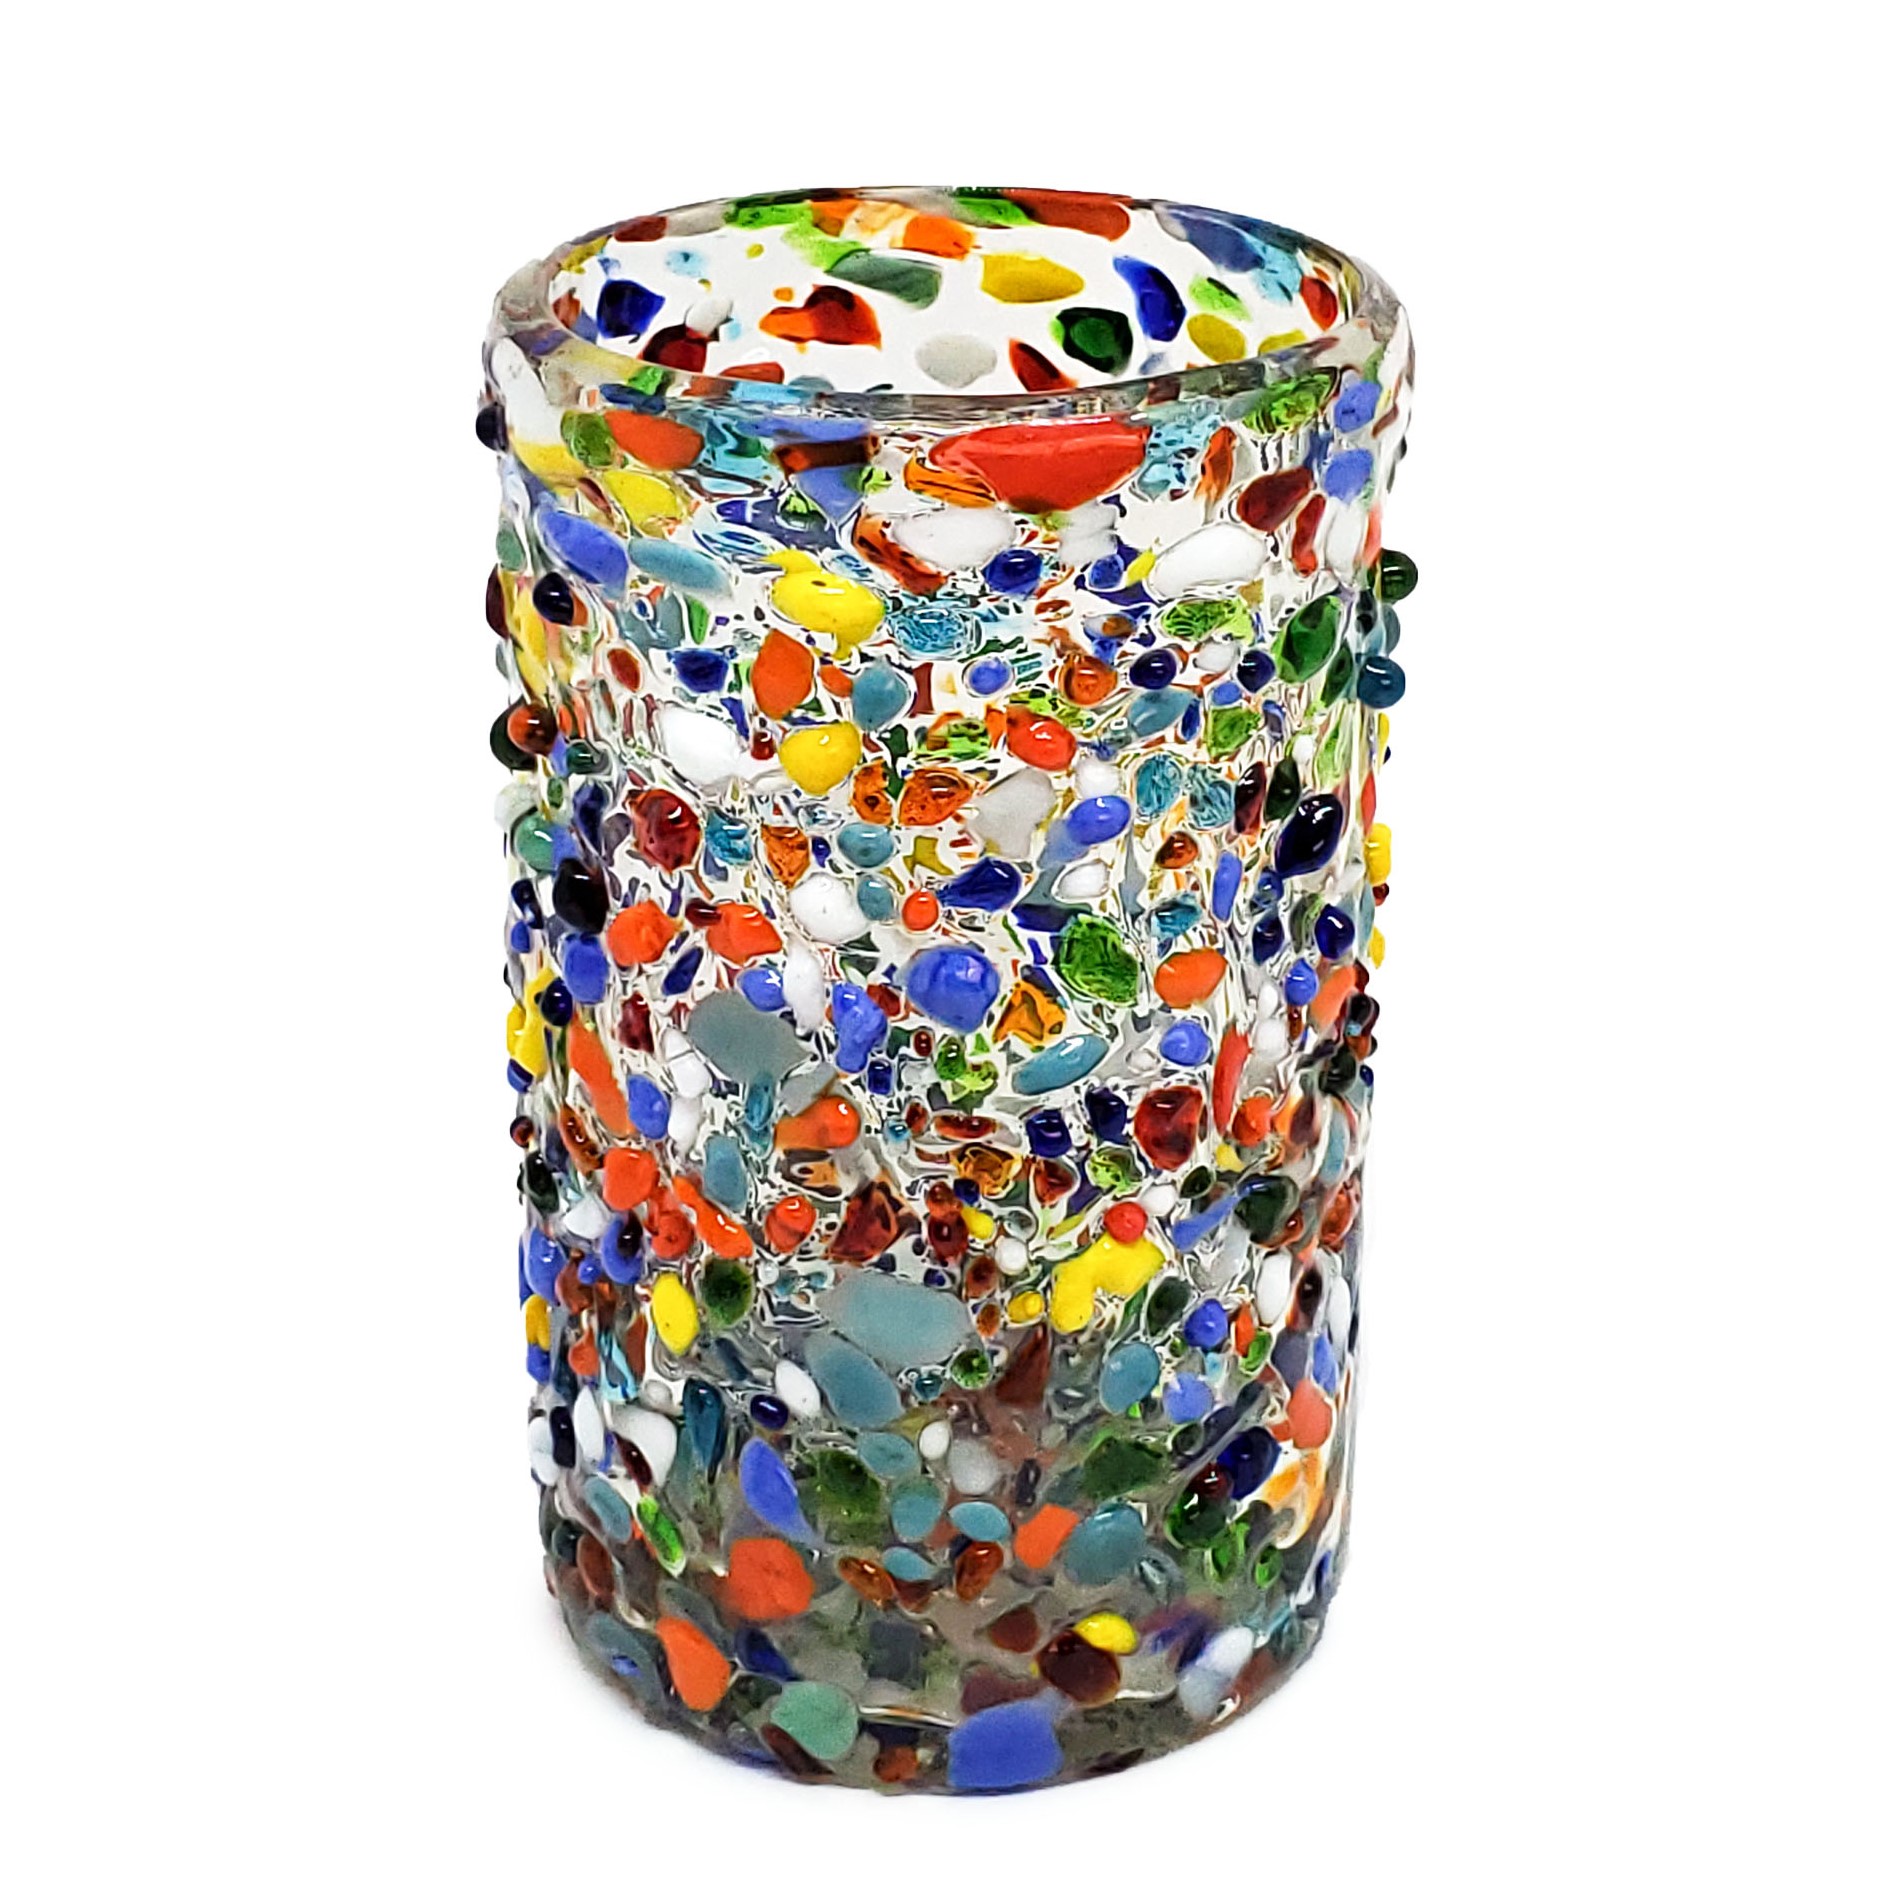 VIDRIO SOPLADO / Juego de 6 vasos grandes 'Confeti granizado' / Deje entrar a la primavera en su casa con éste colorido juego de vasos. El decorado con vidrio multicolor los hace resaltar en cualquier lugar.